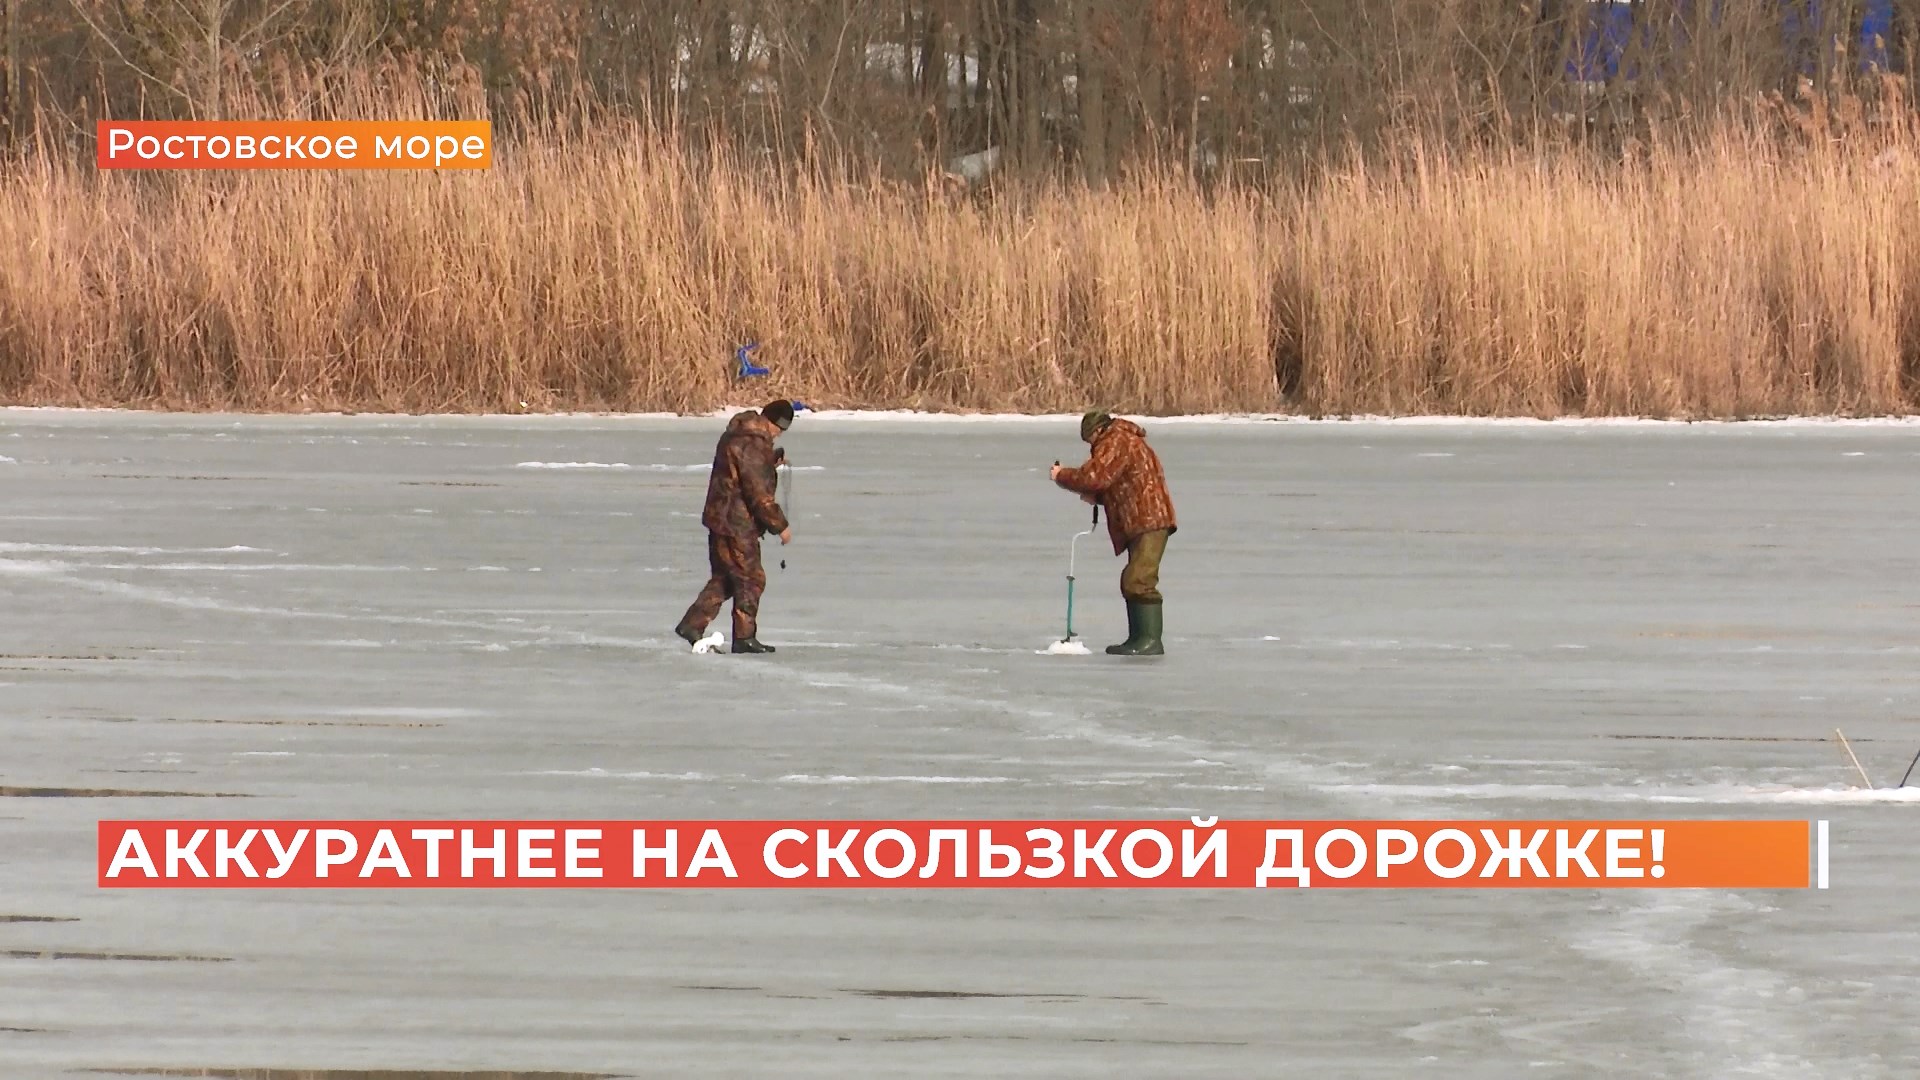 Пошли по скользкой дорожке: рейд на льду Ростовского моря